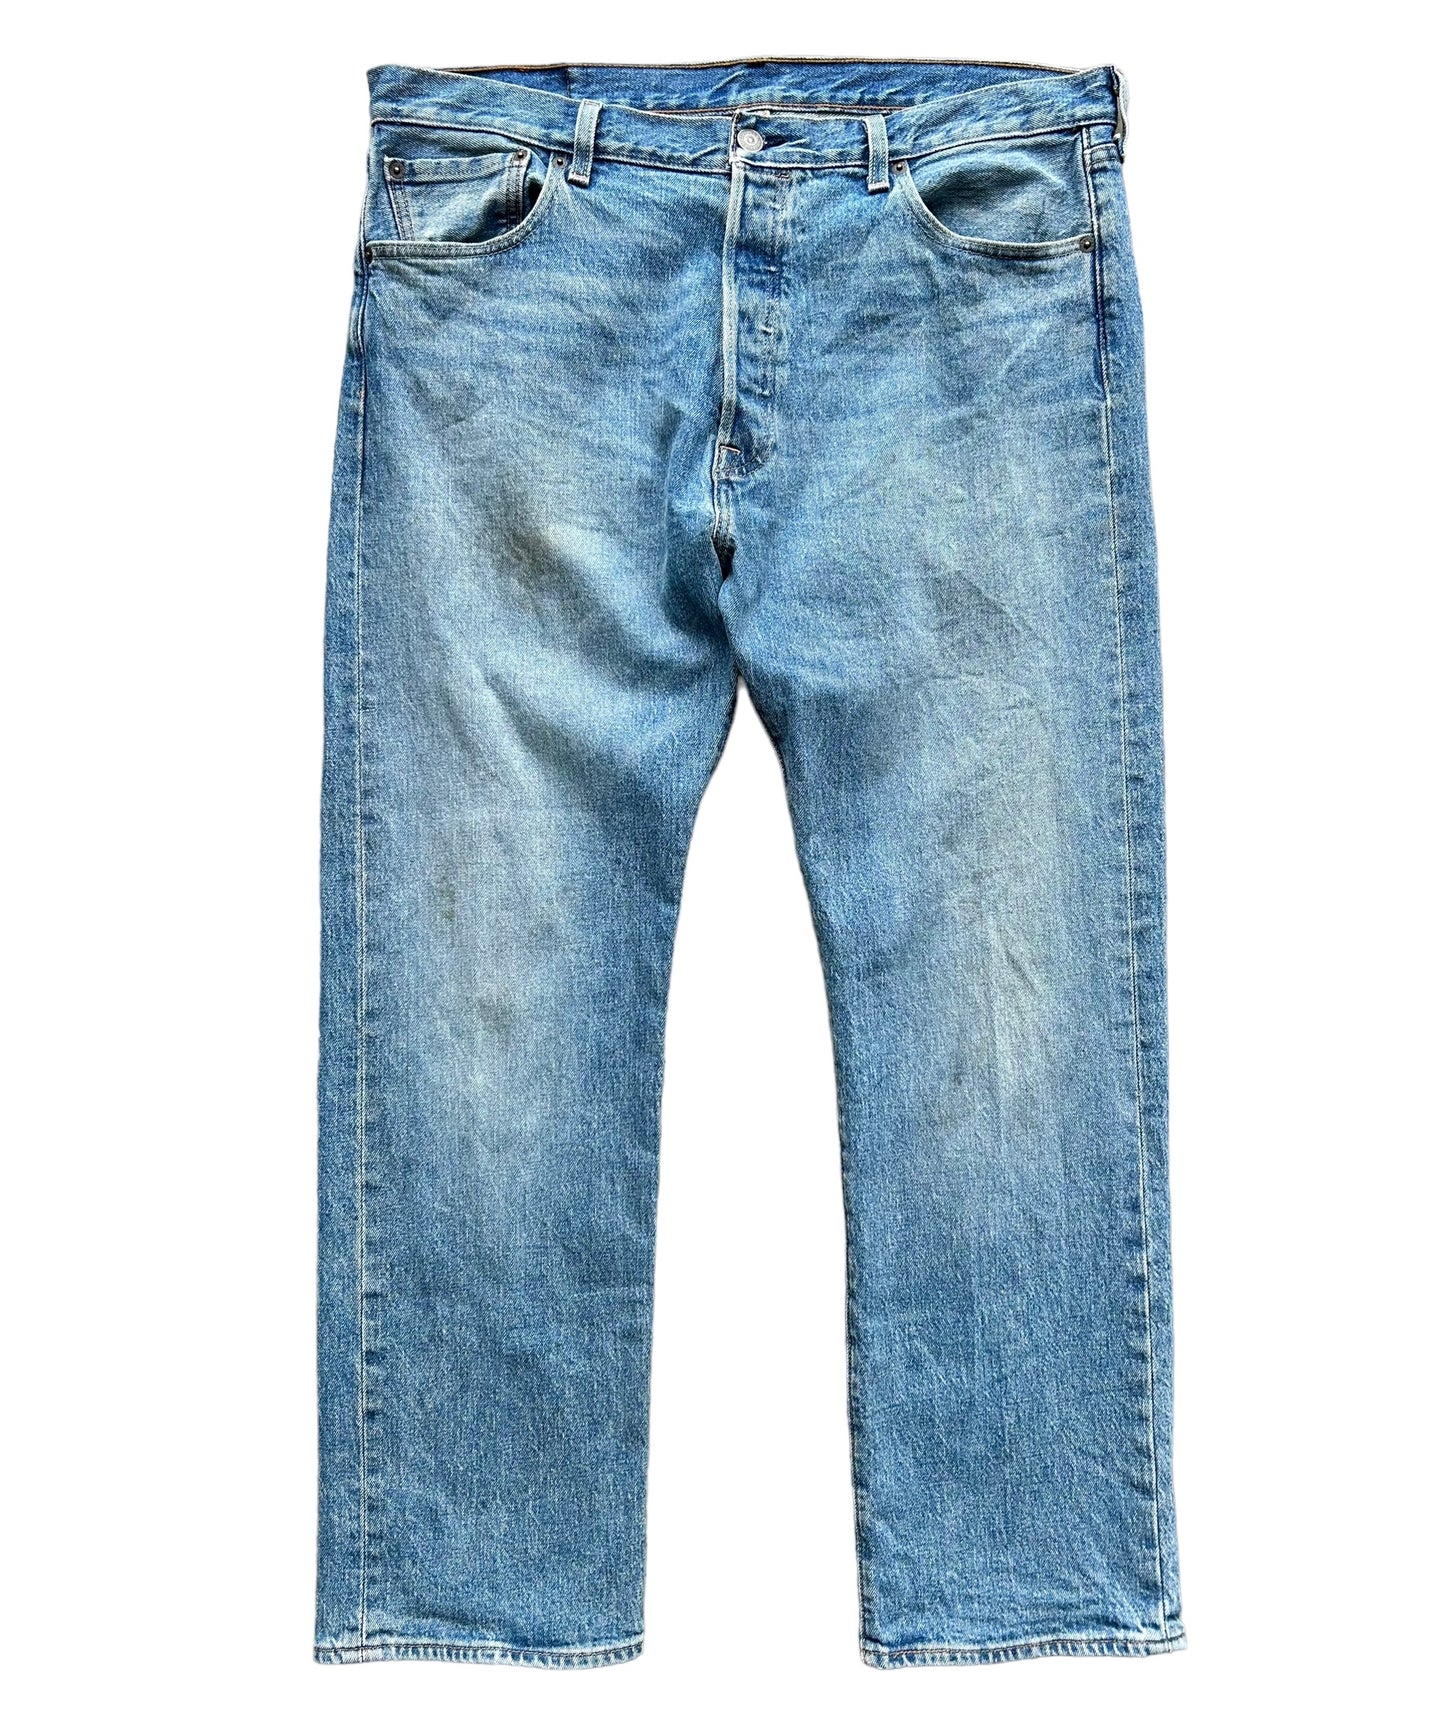 Levis Style 504 Denim Jeans